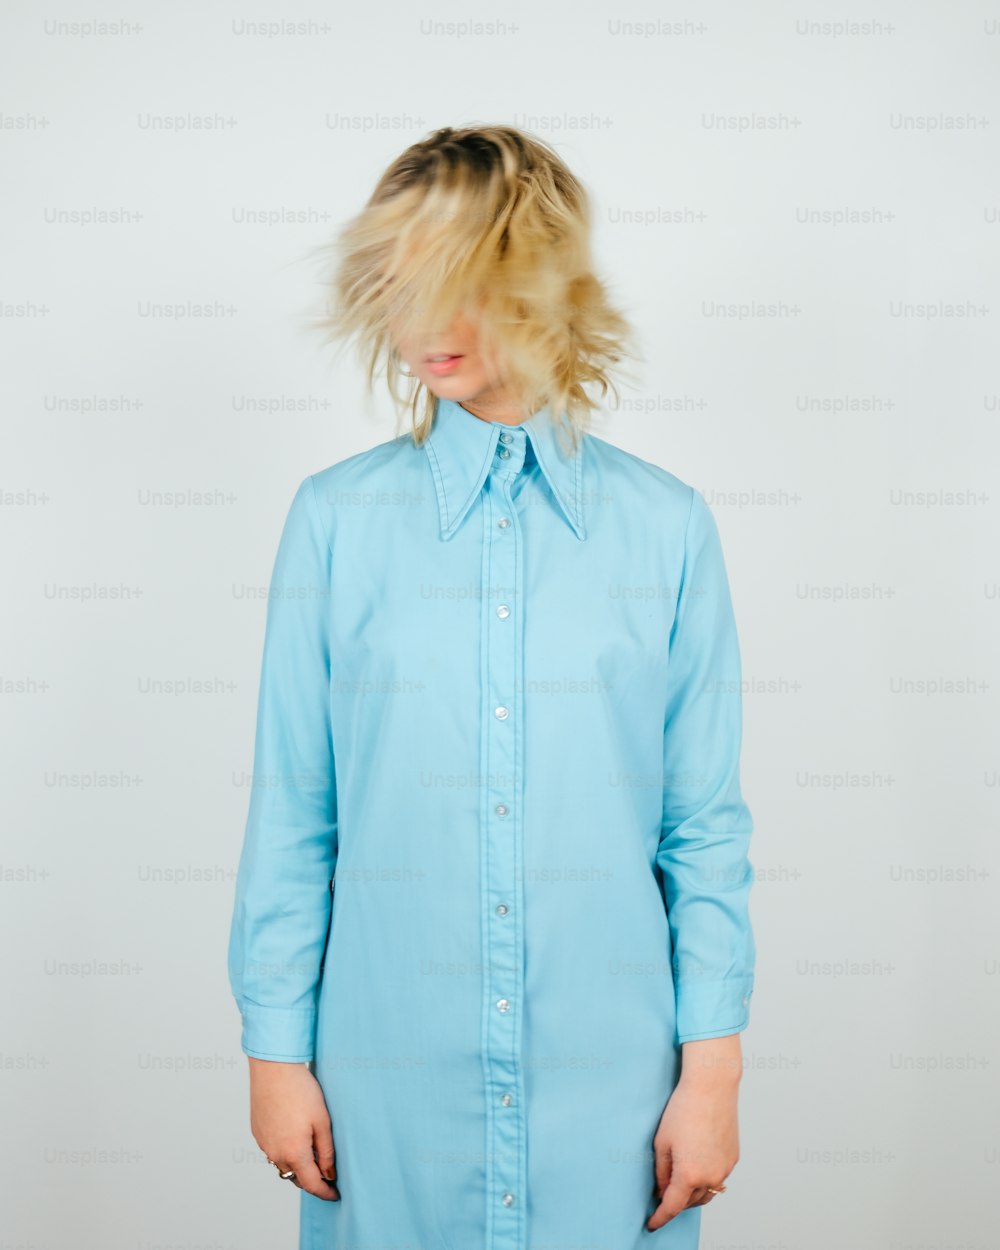 Eine Frau mit blonden Haaren trägt ein blaues Hemdkleid